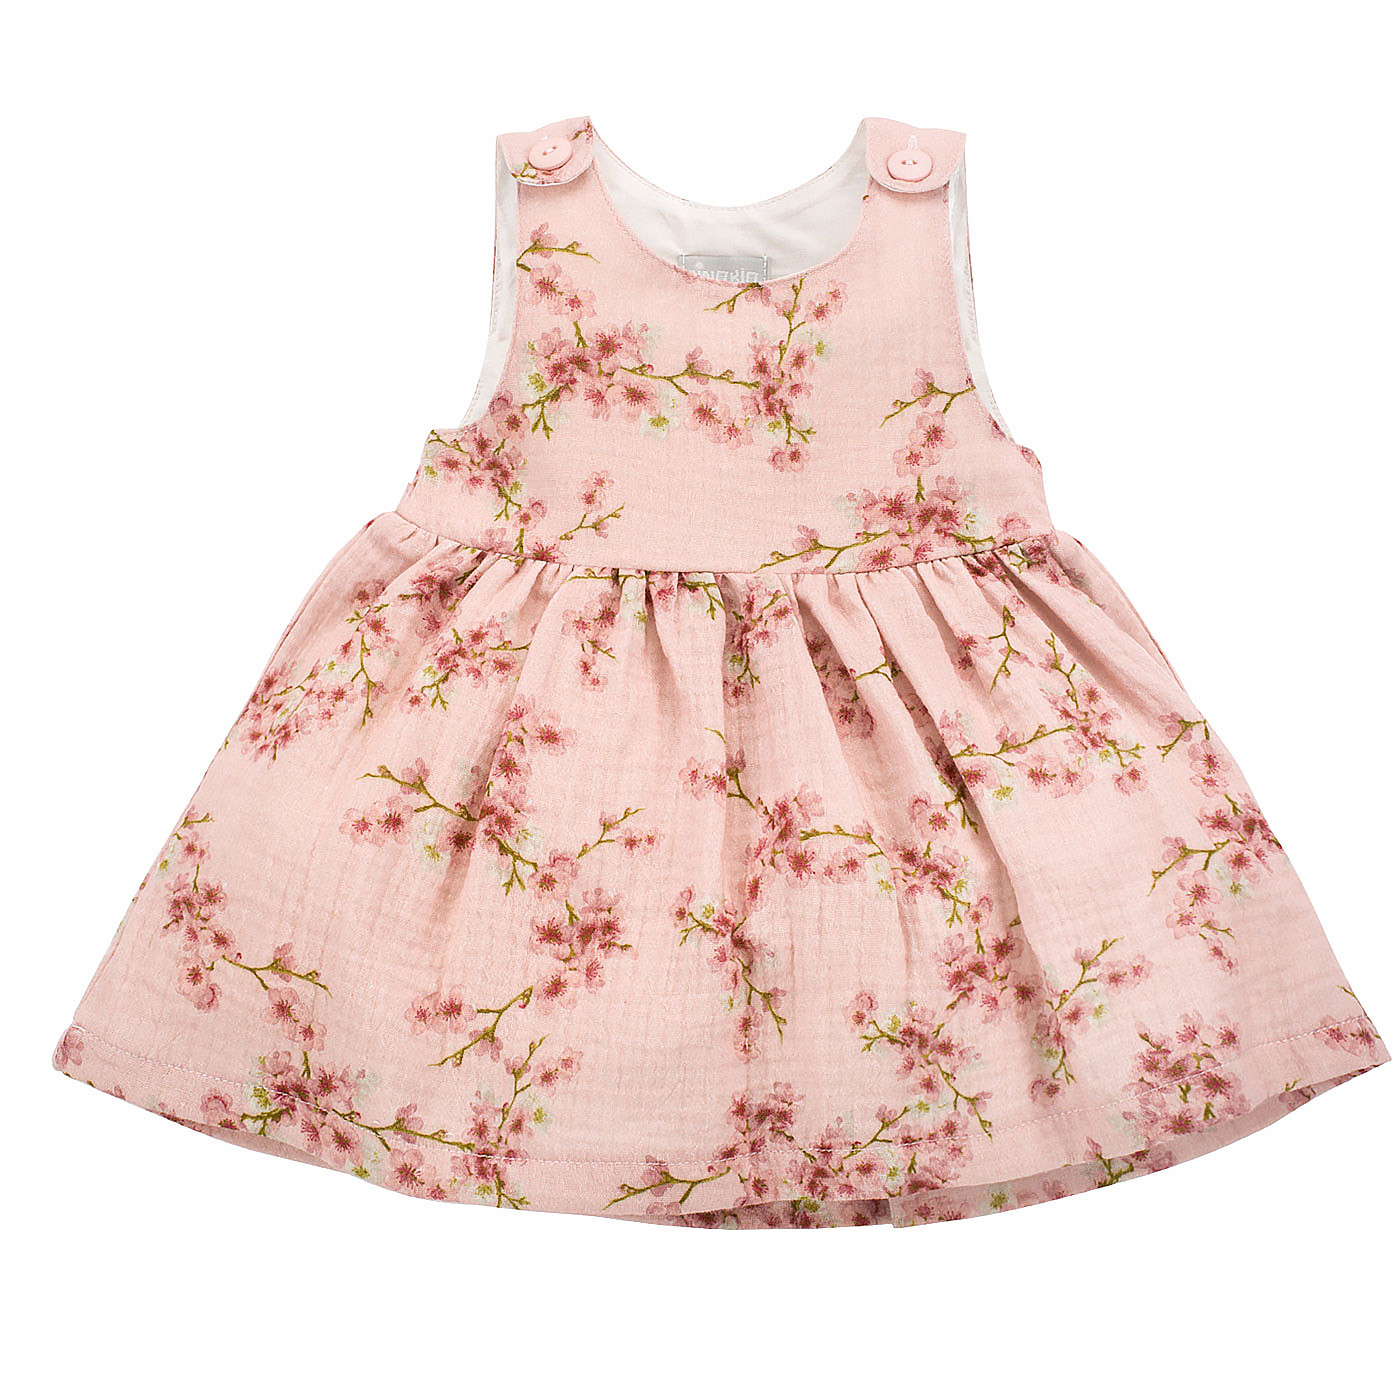 Pinokio Letní náladové šaty Pink Flowers 68